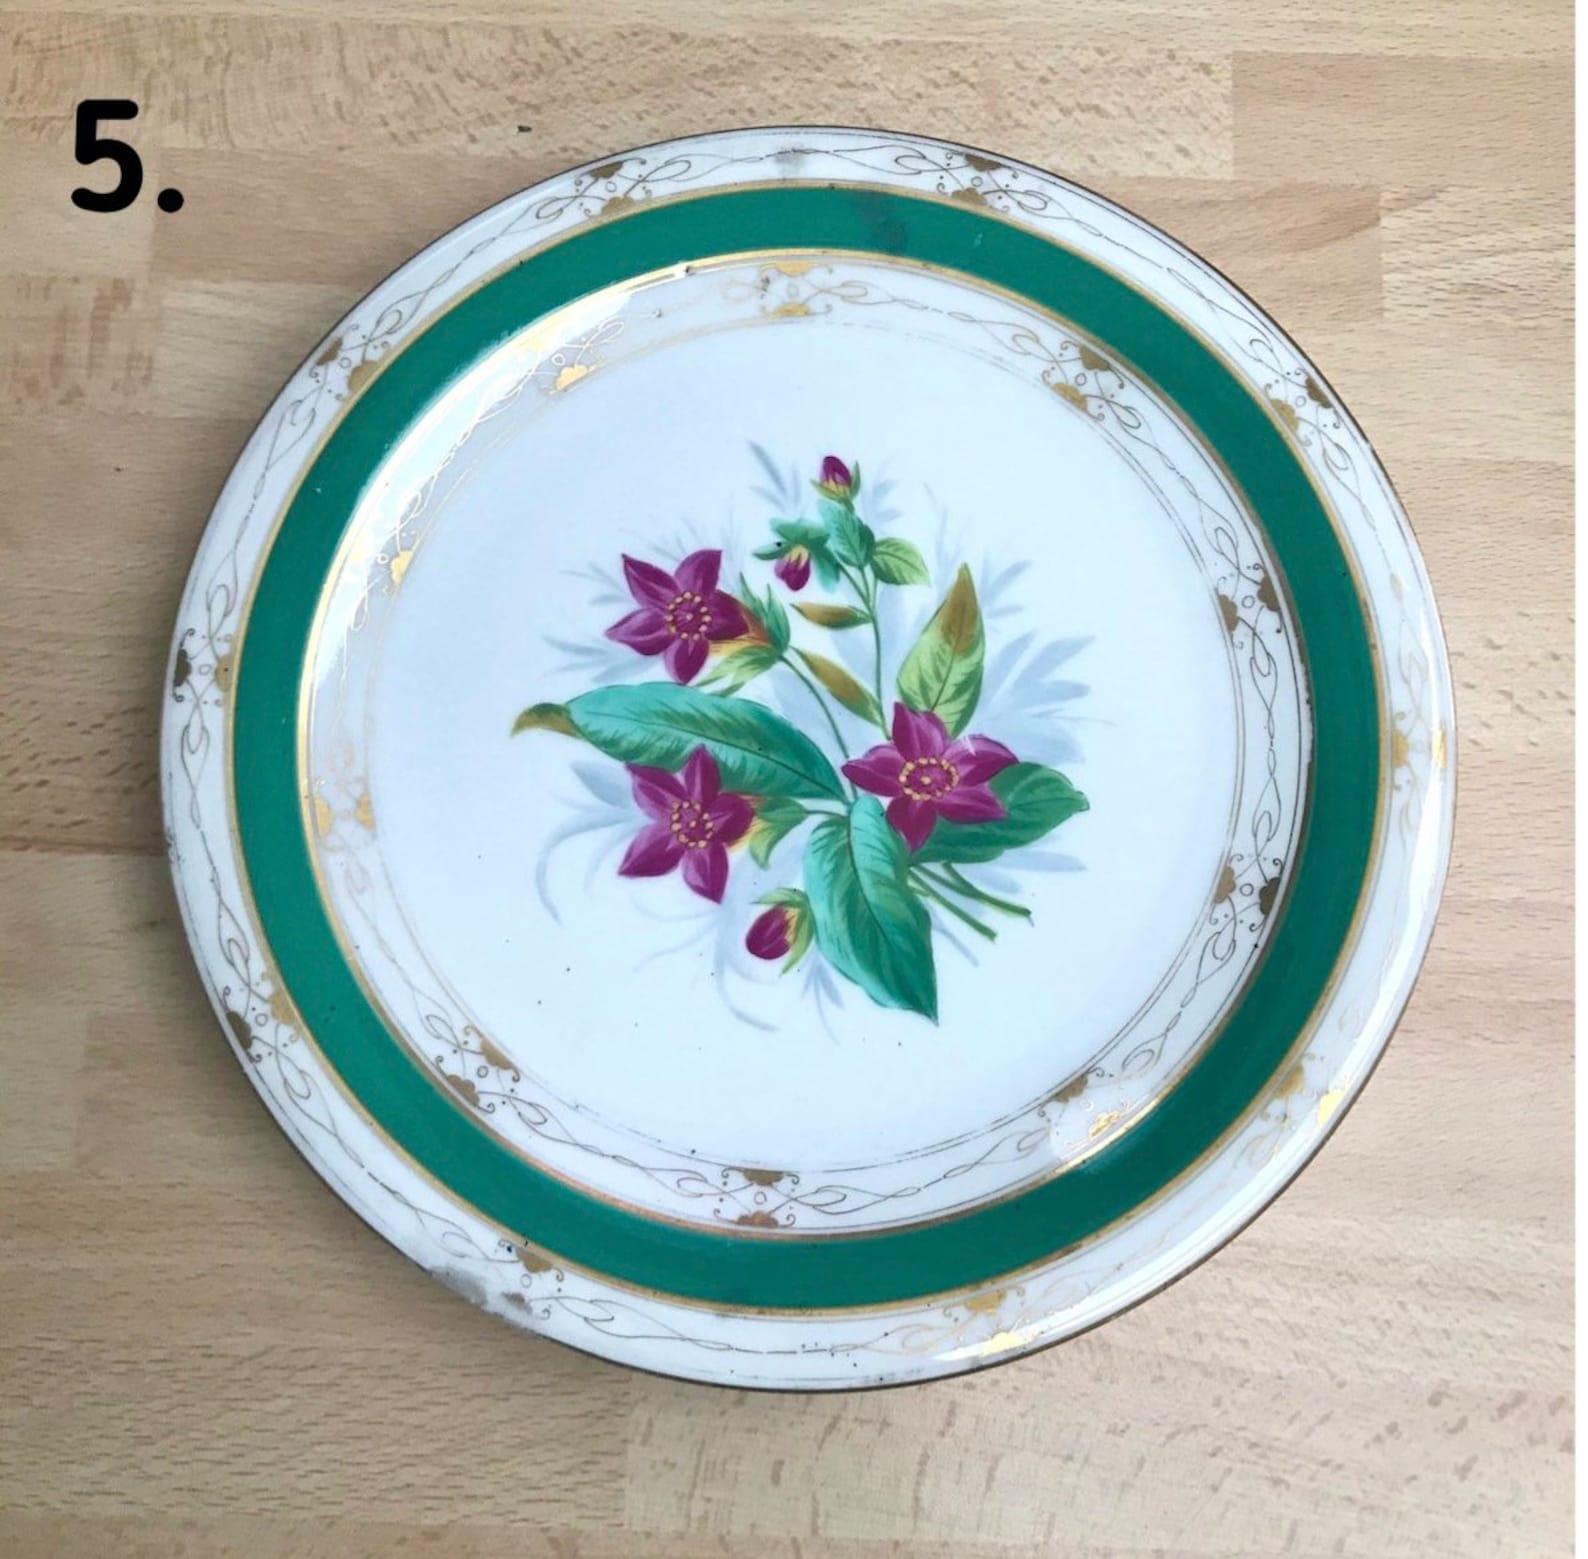 Antique Collectible Plates 19 Century Porcelain Plates For Sale 1